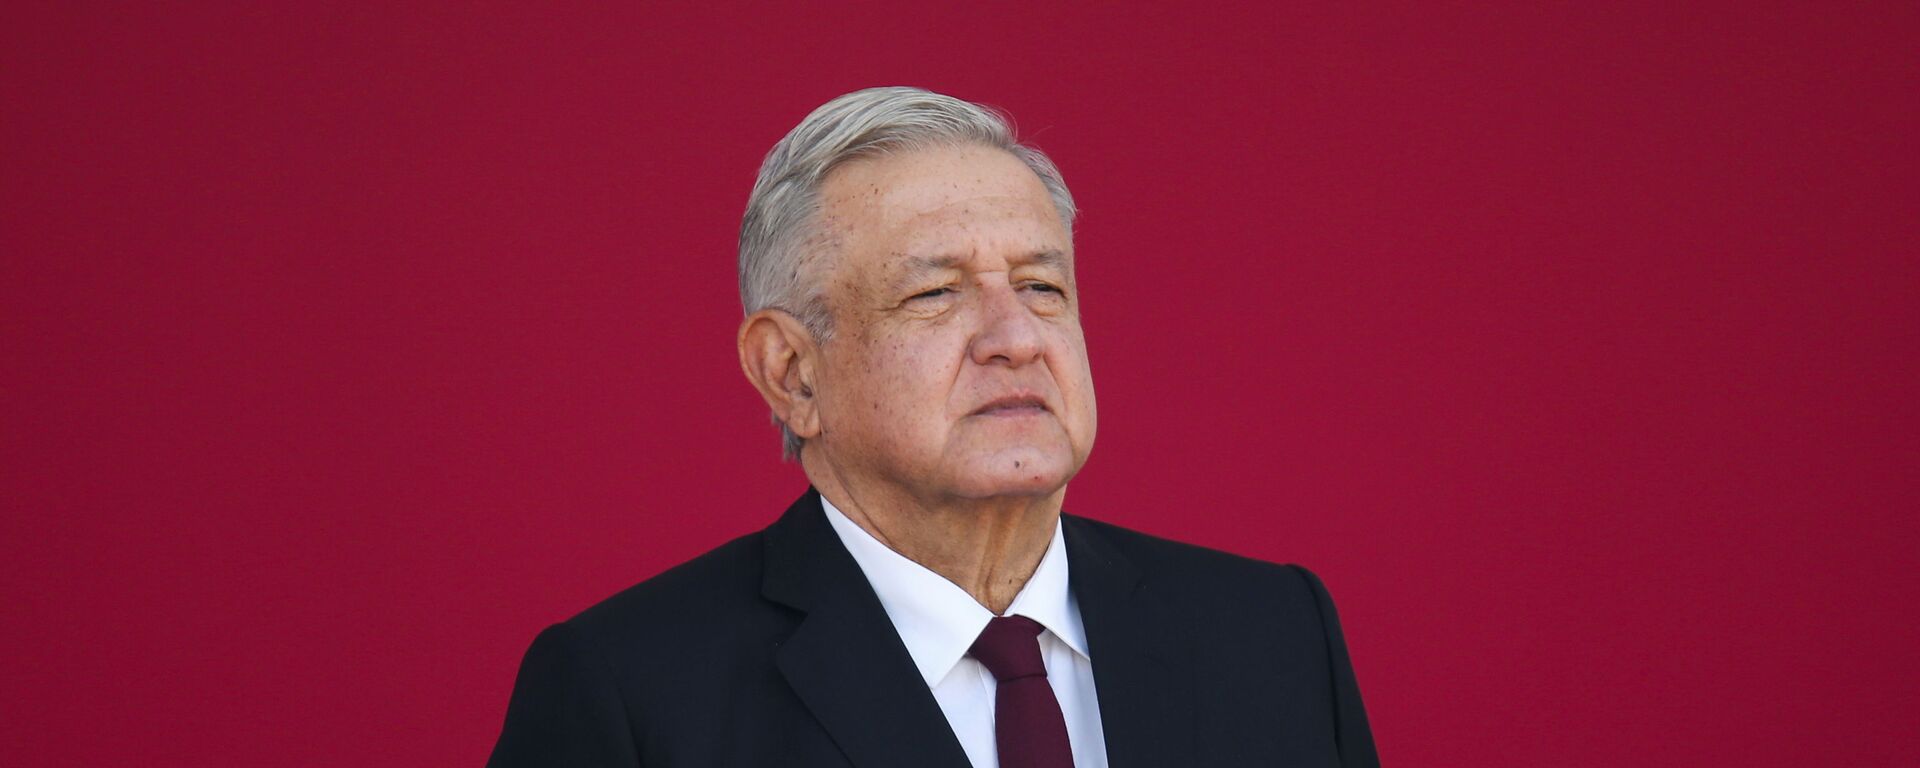 Andrés Manuel López Obrador, presidente de México - Sputnik Mundo, 1920, 18.03.2021